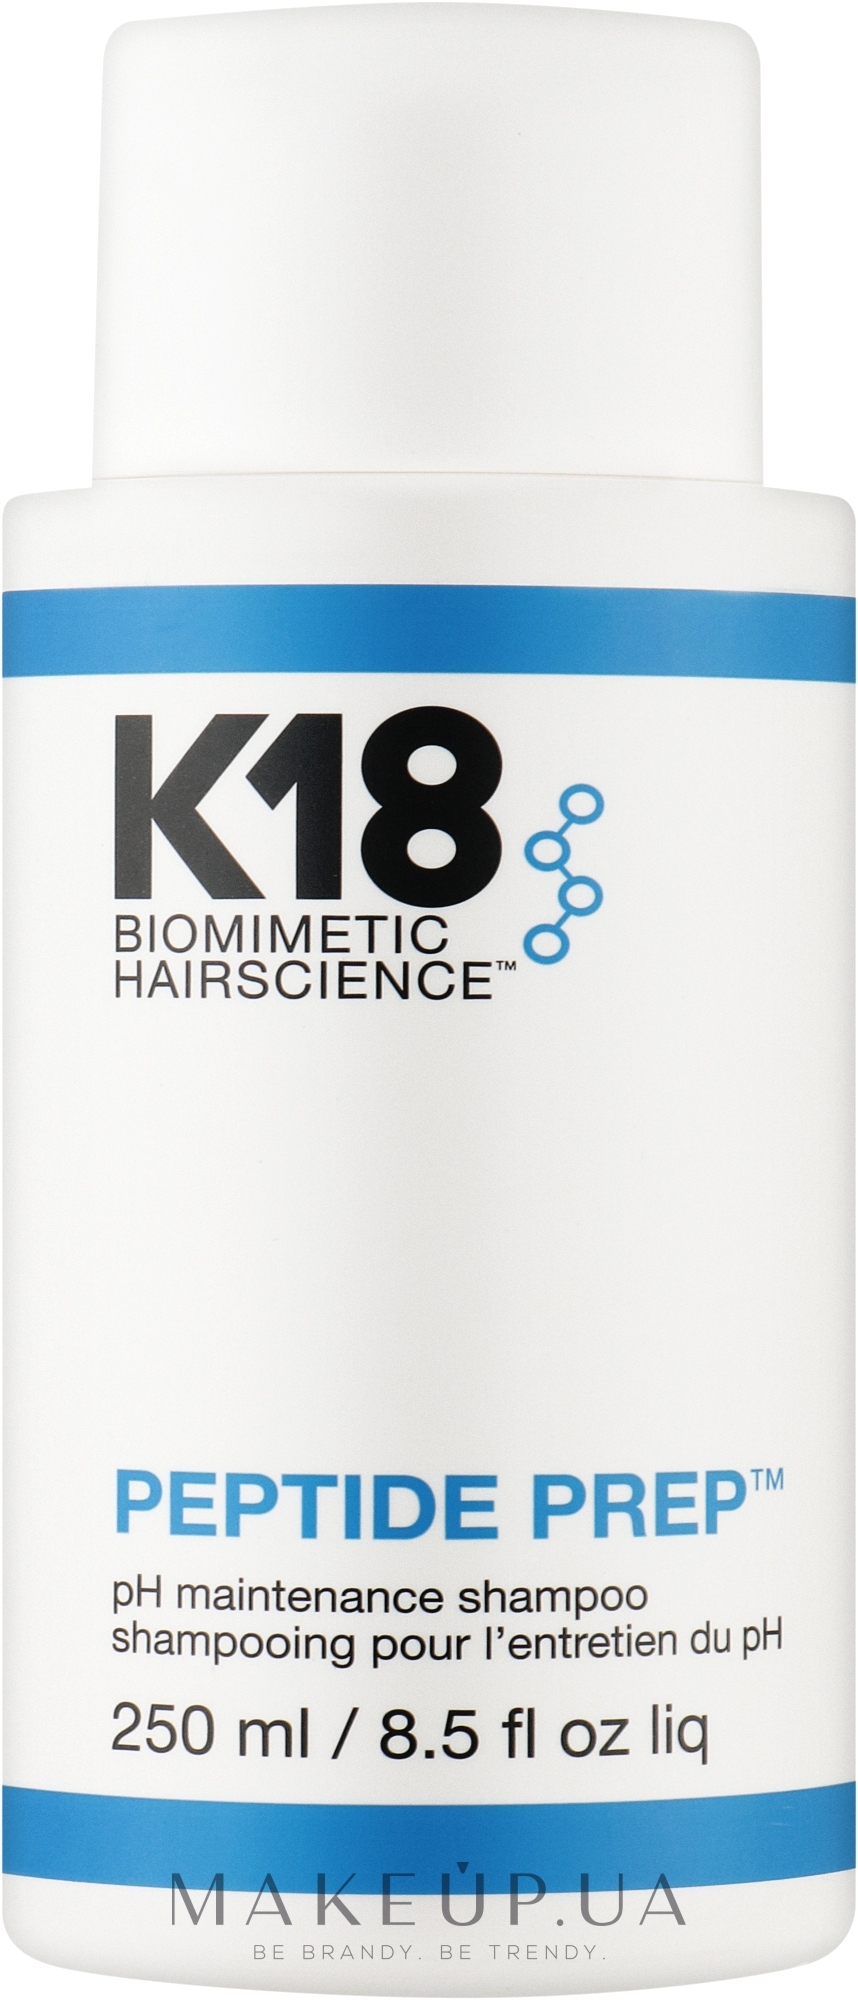 Шампунь з оптимізованим рівнем pH для частого використання - K18 Hair Biomimetic Hairscience Peptide Prep PH Shampoo — фото 250ml